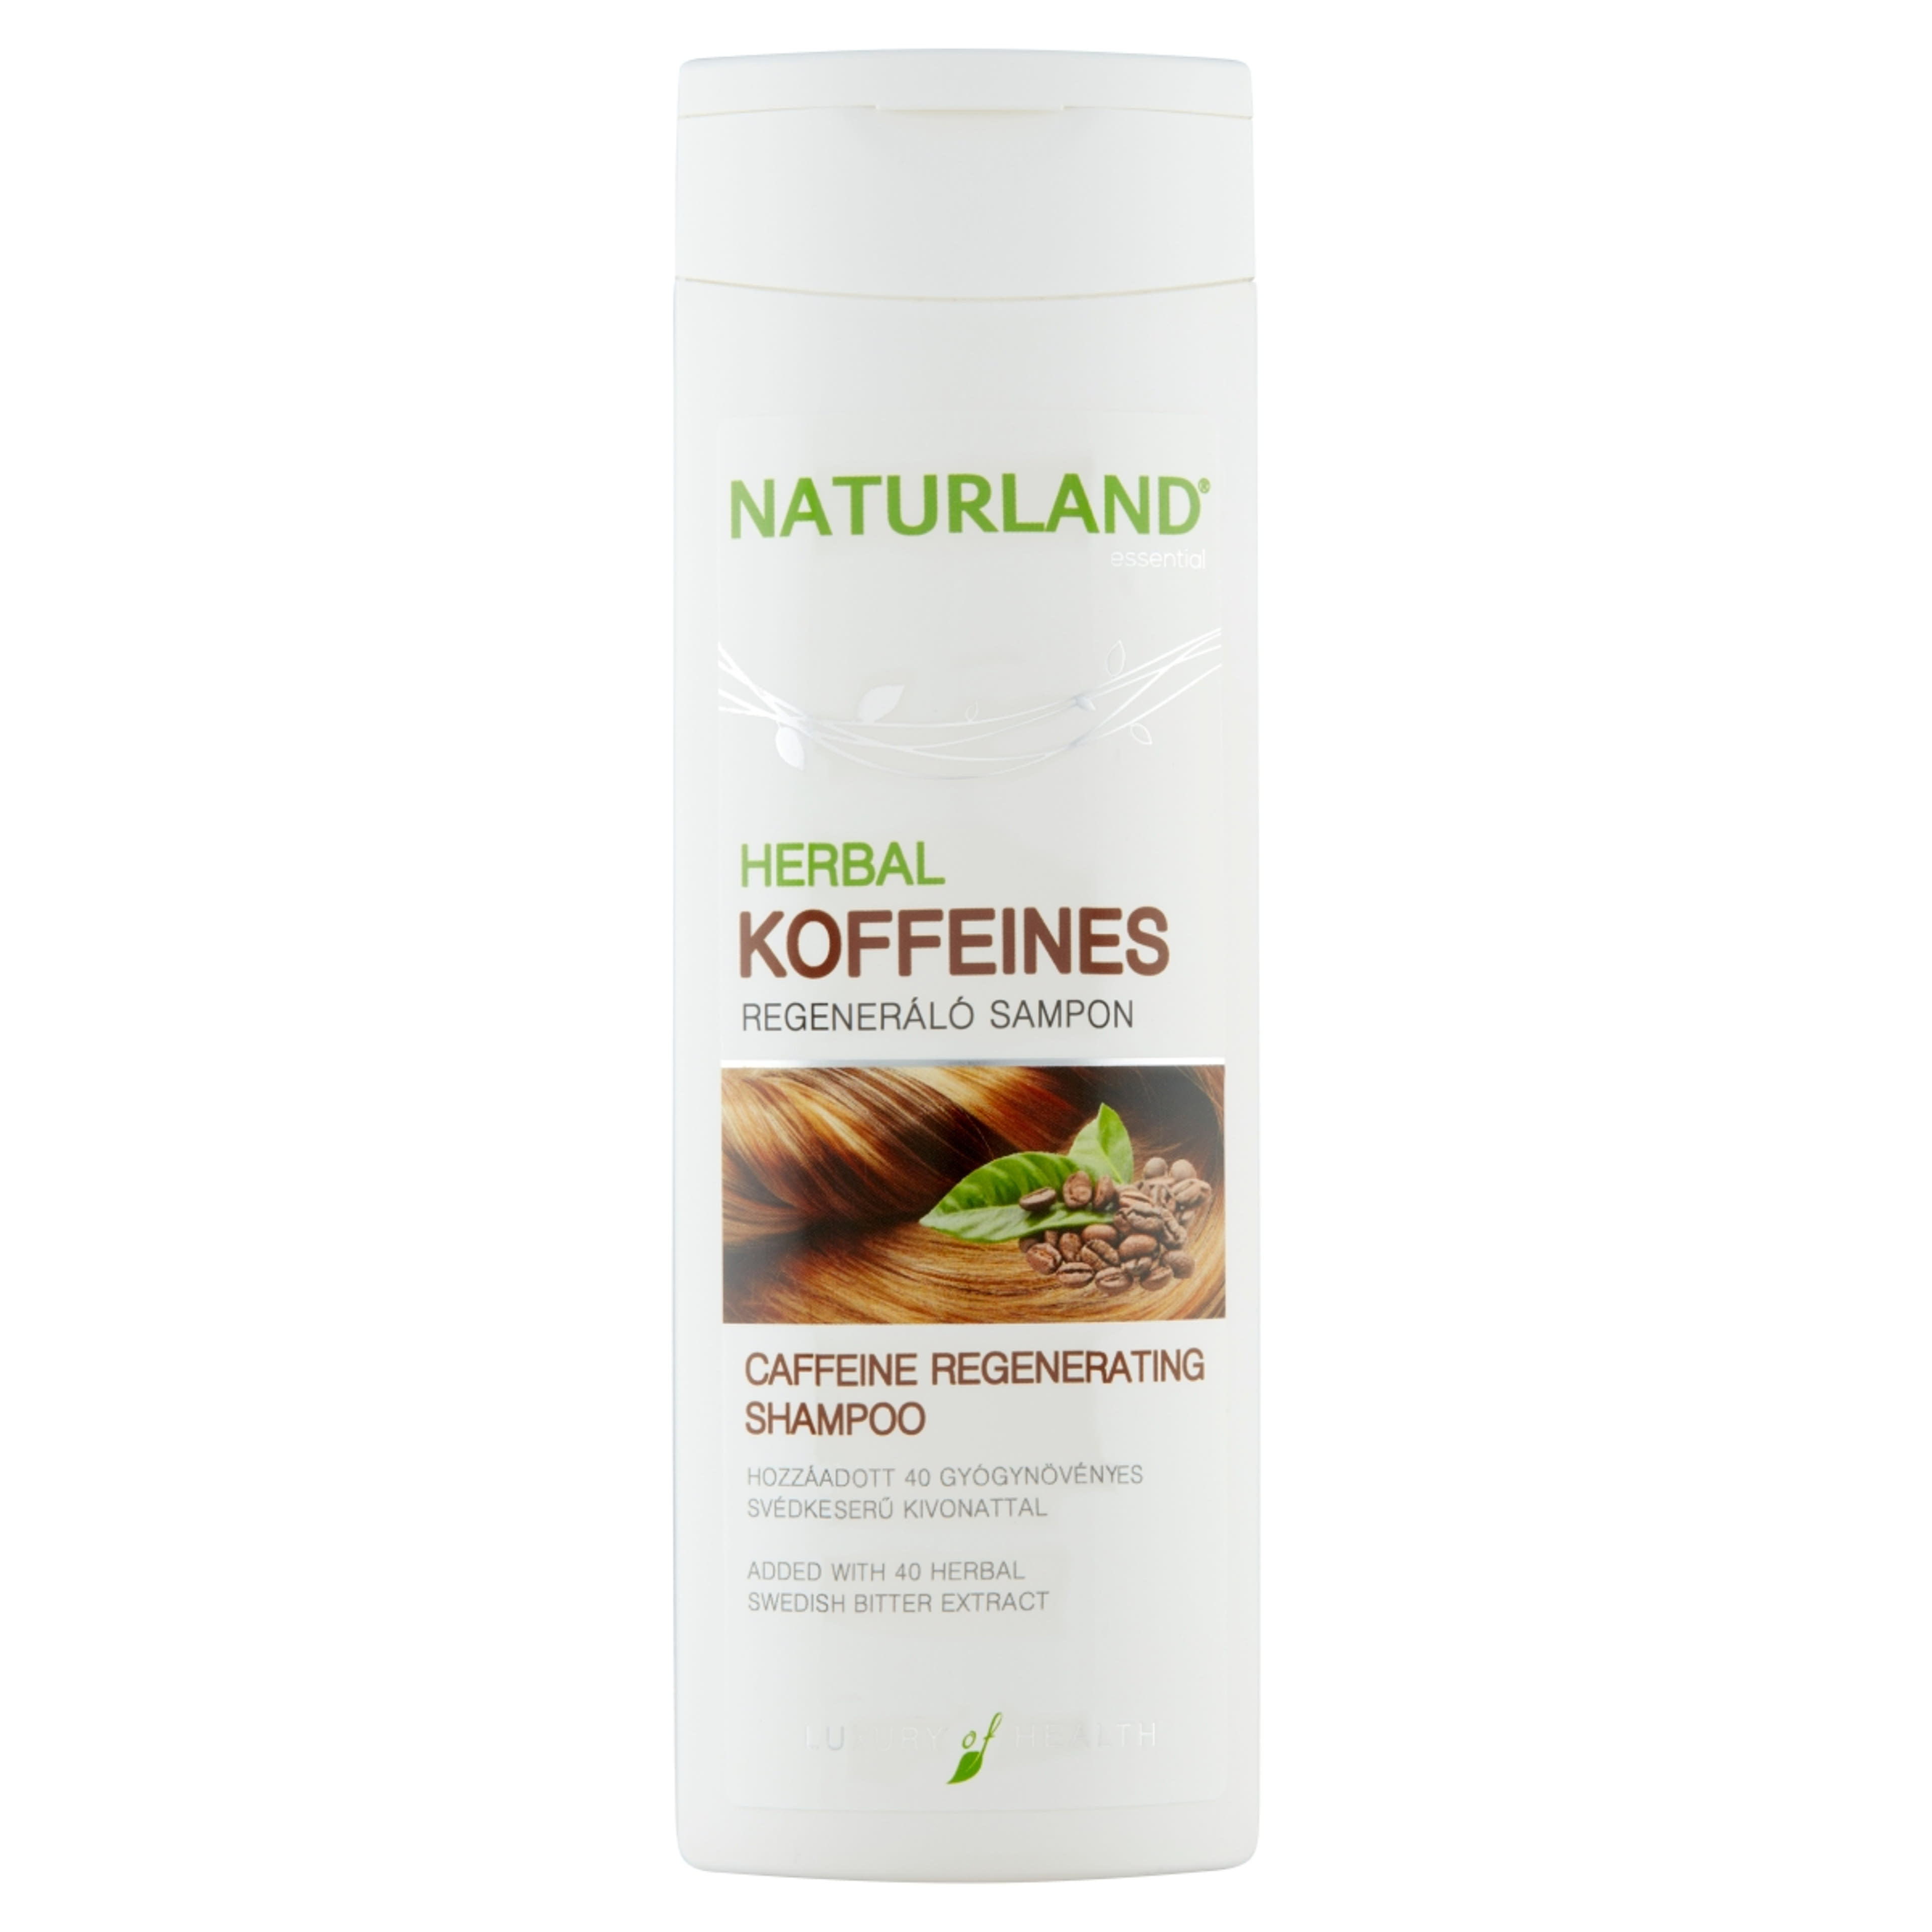 Naturland Herbal koffeines sampon - 200 ml-1